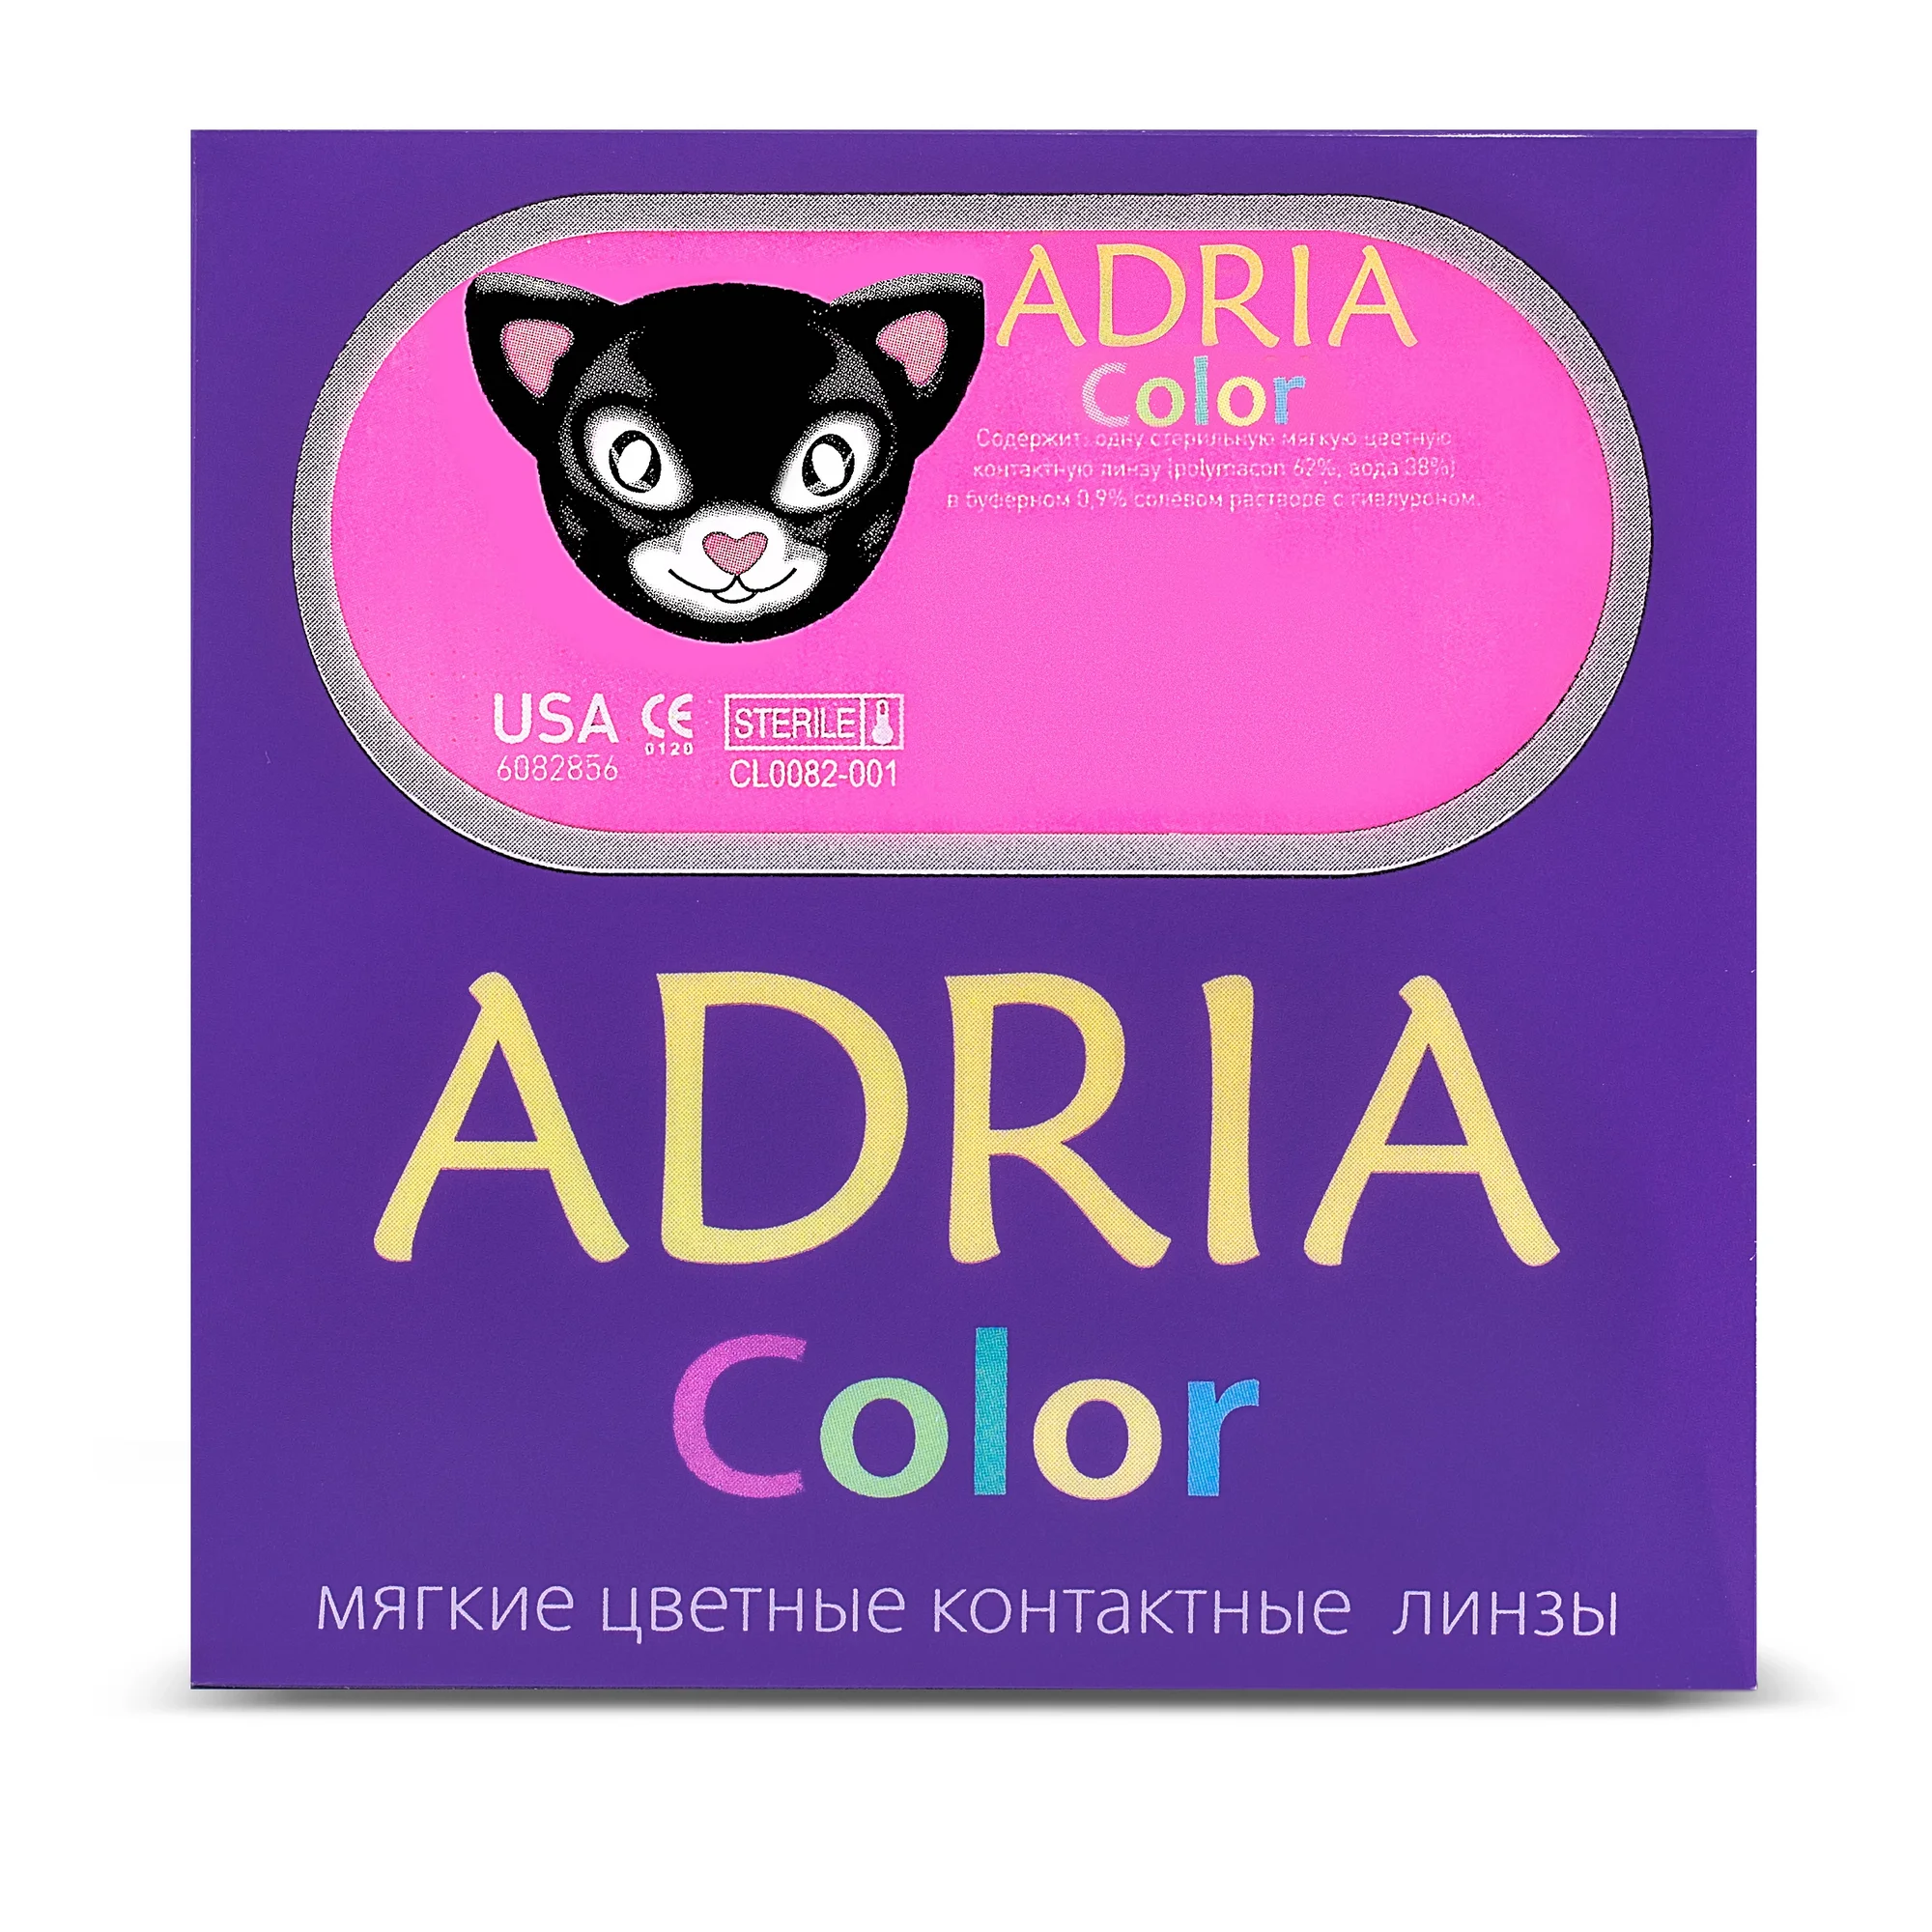 COLOR BOX ADRIA Color 3 Tone Hazel (орех)